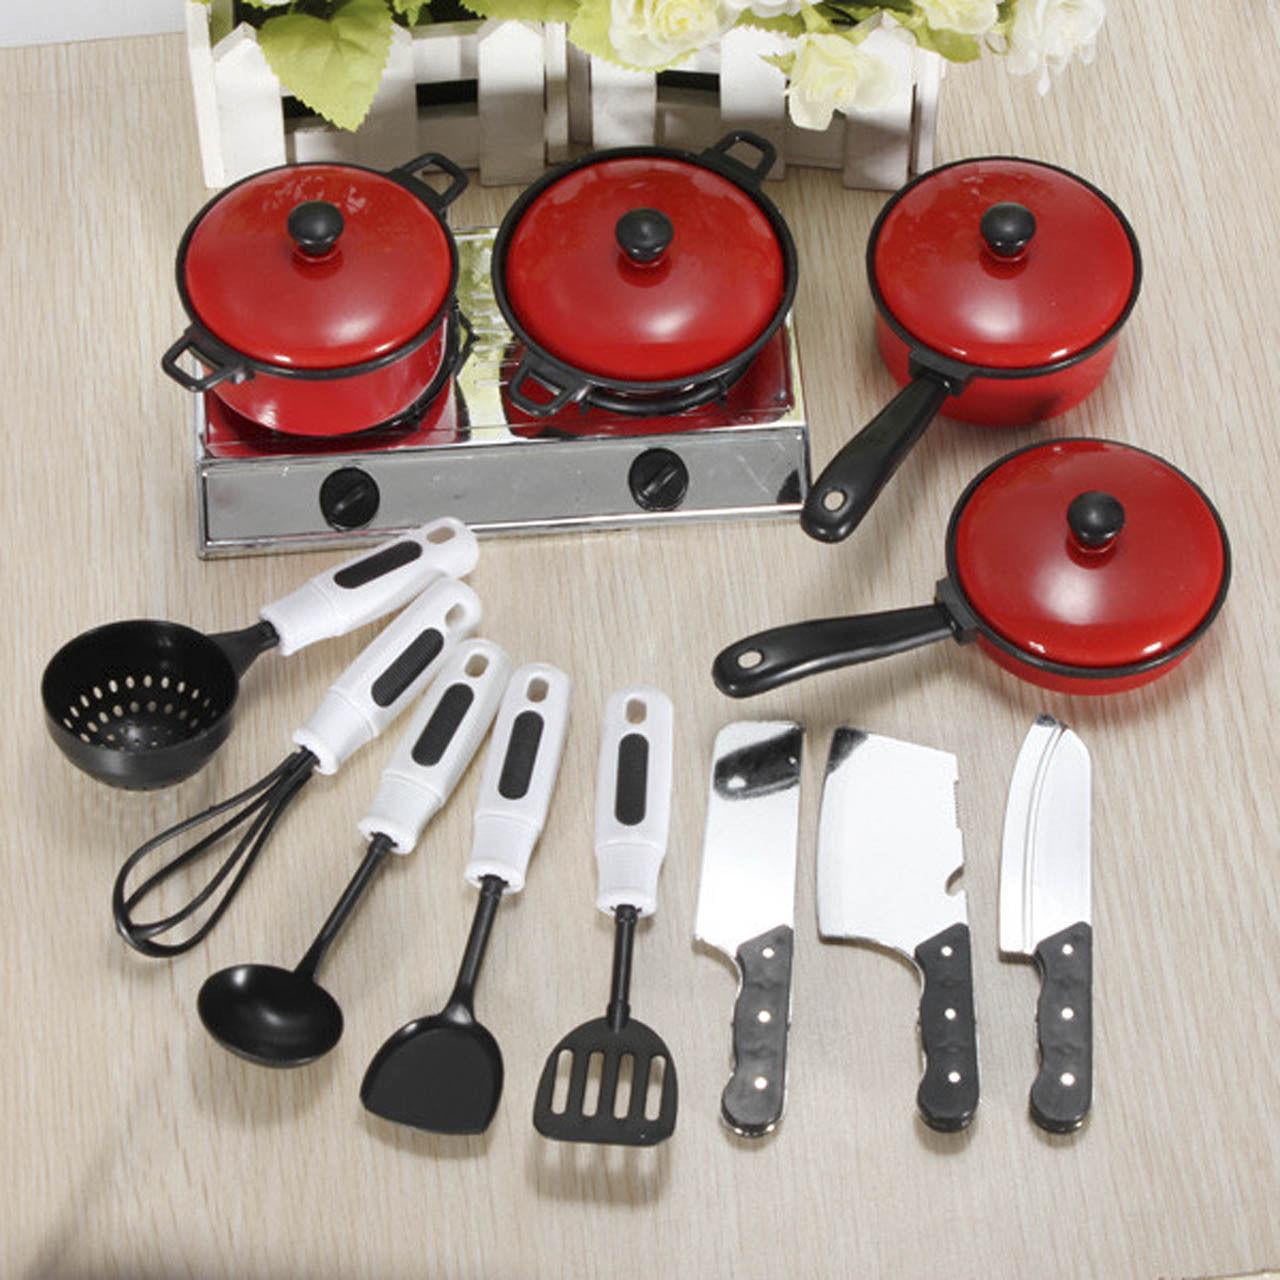 Кухонная посуда и инвентарь для столовых